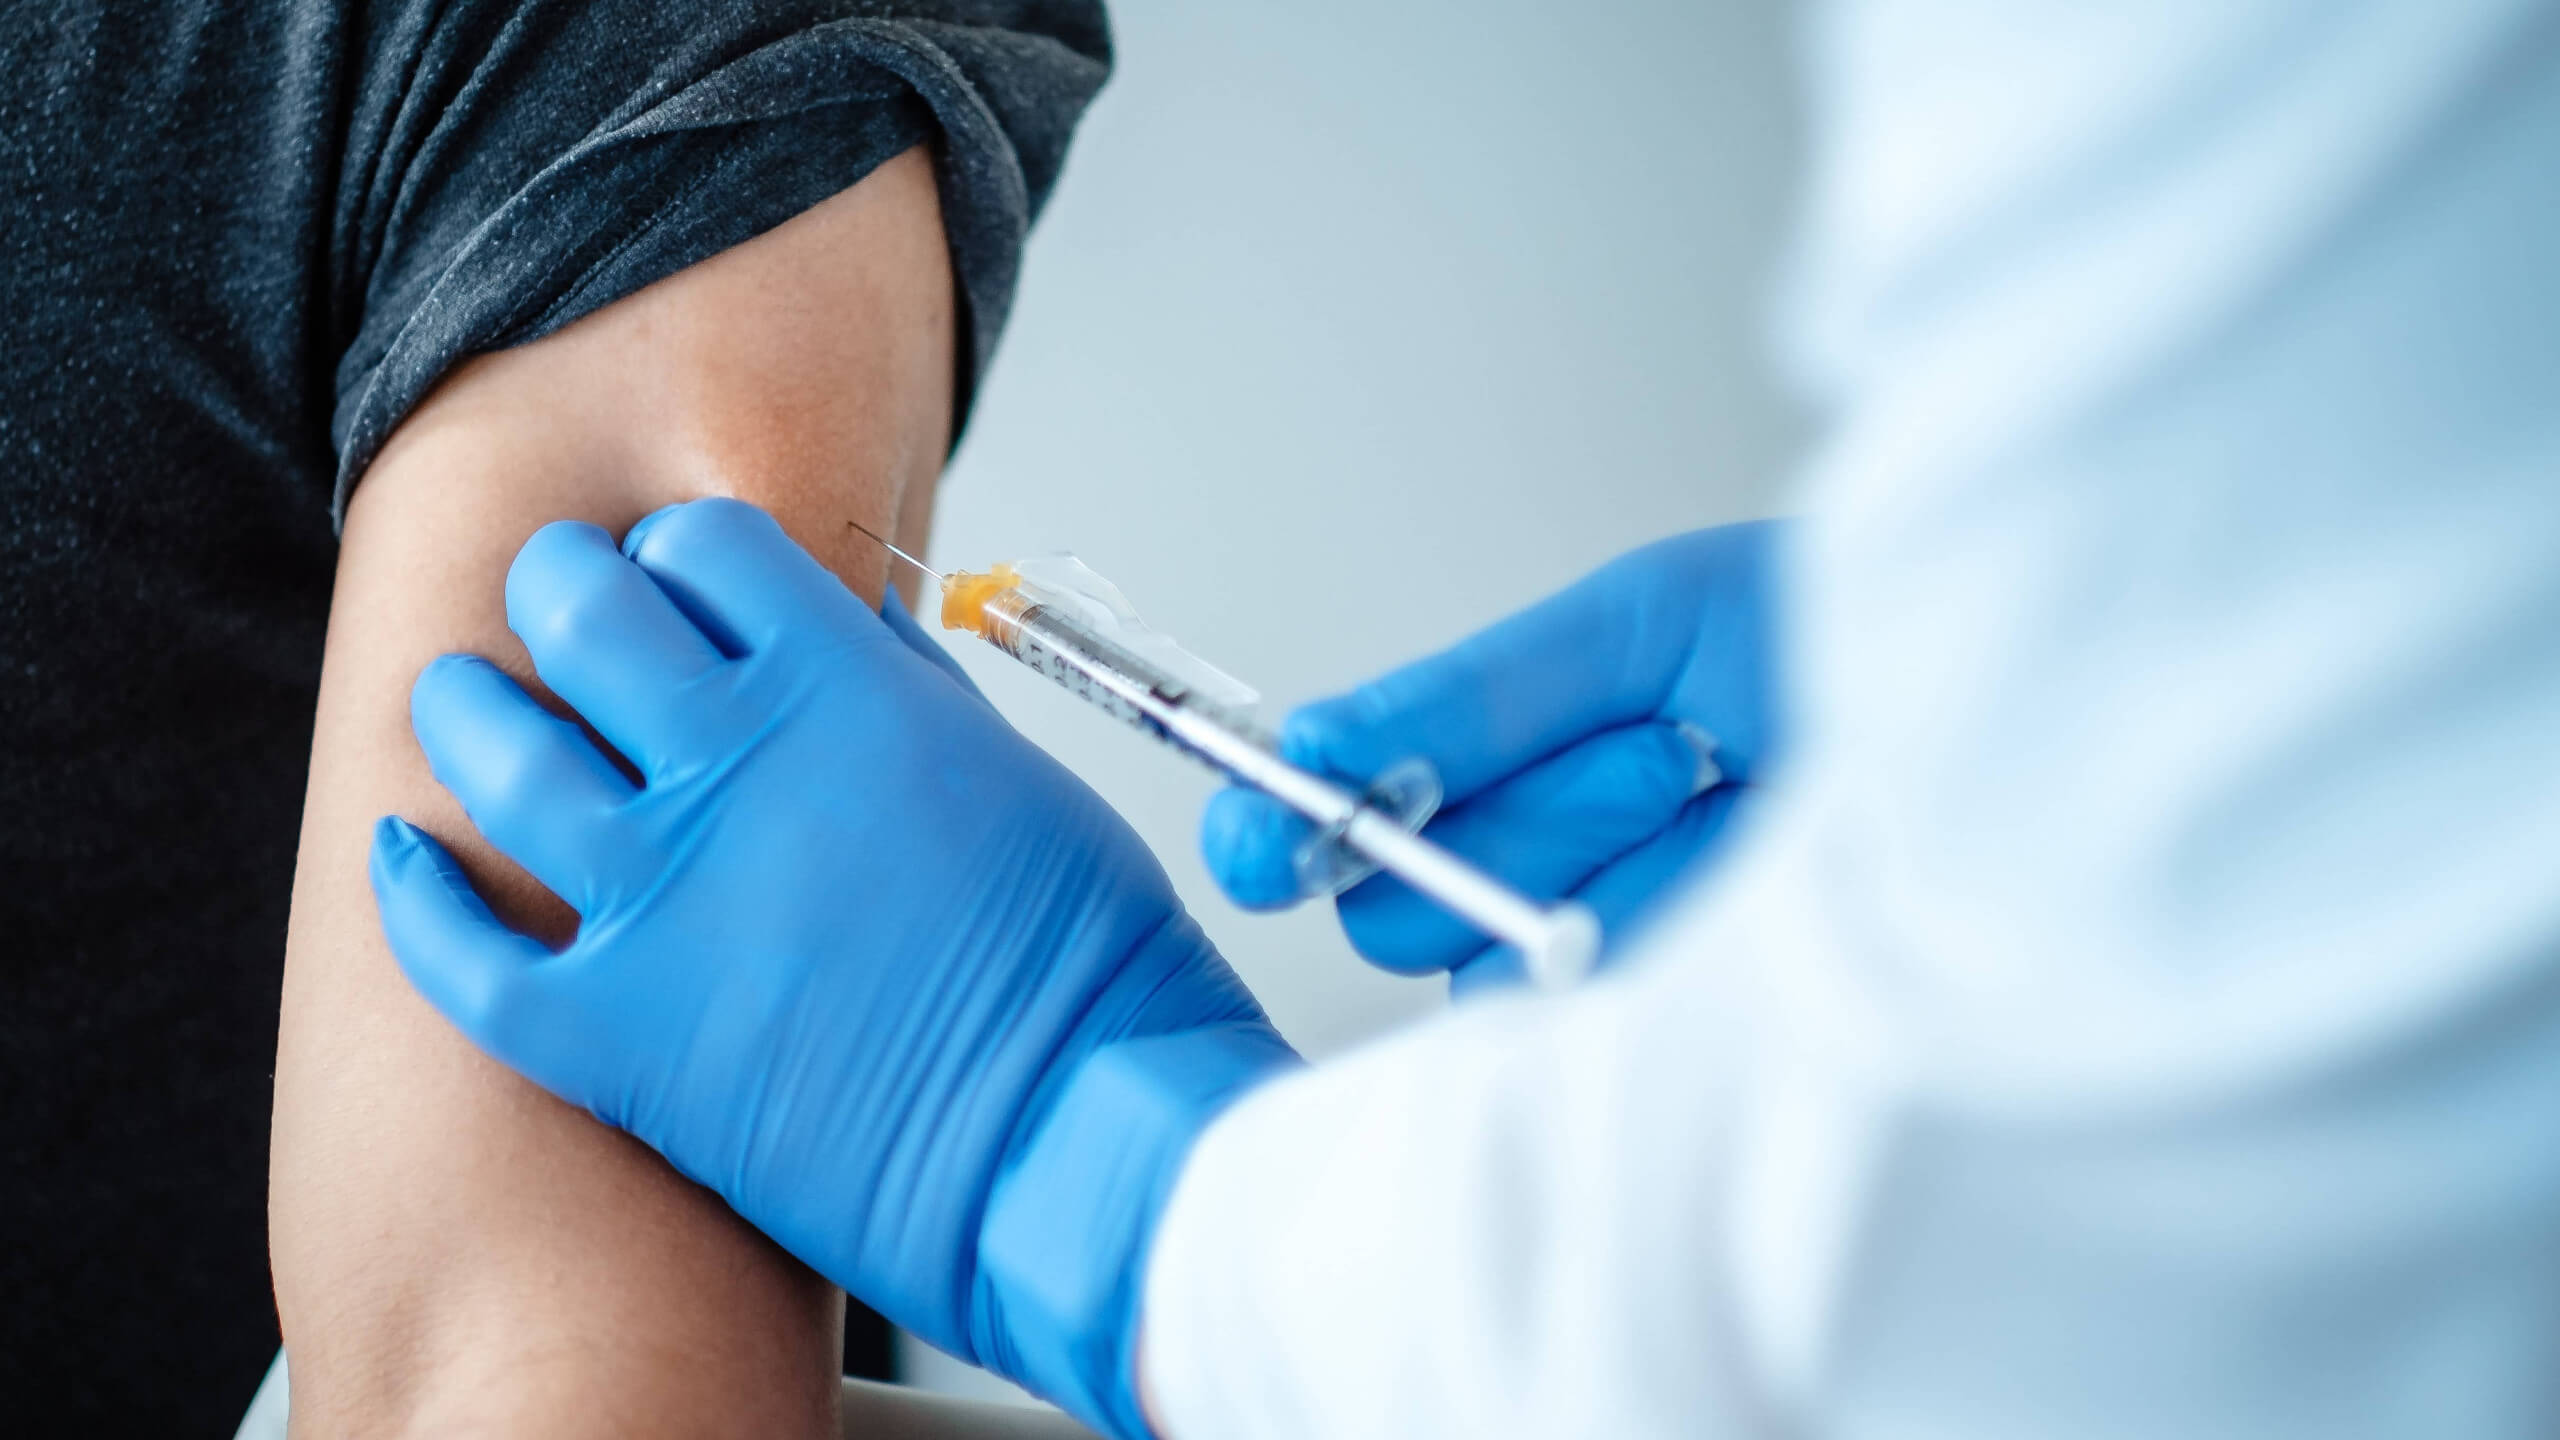 Ein Vergleich von Nebenwirkungen der Impfung und Symptomen bei Covid-19 ist irreführend, laut FDA überwiegen aber die Vorteile des Impfstoffs seine Risiken. Der Impfstoff erhielt eine Notfallzulassung – also eine Zulassung auf Zeit.